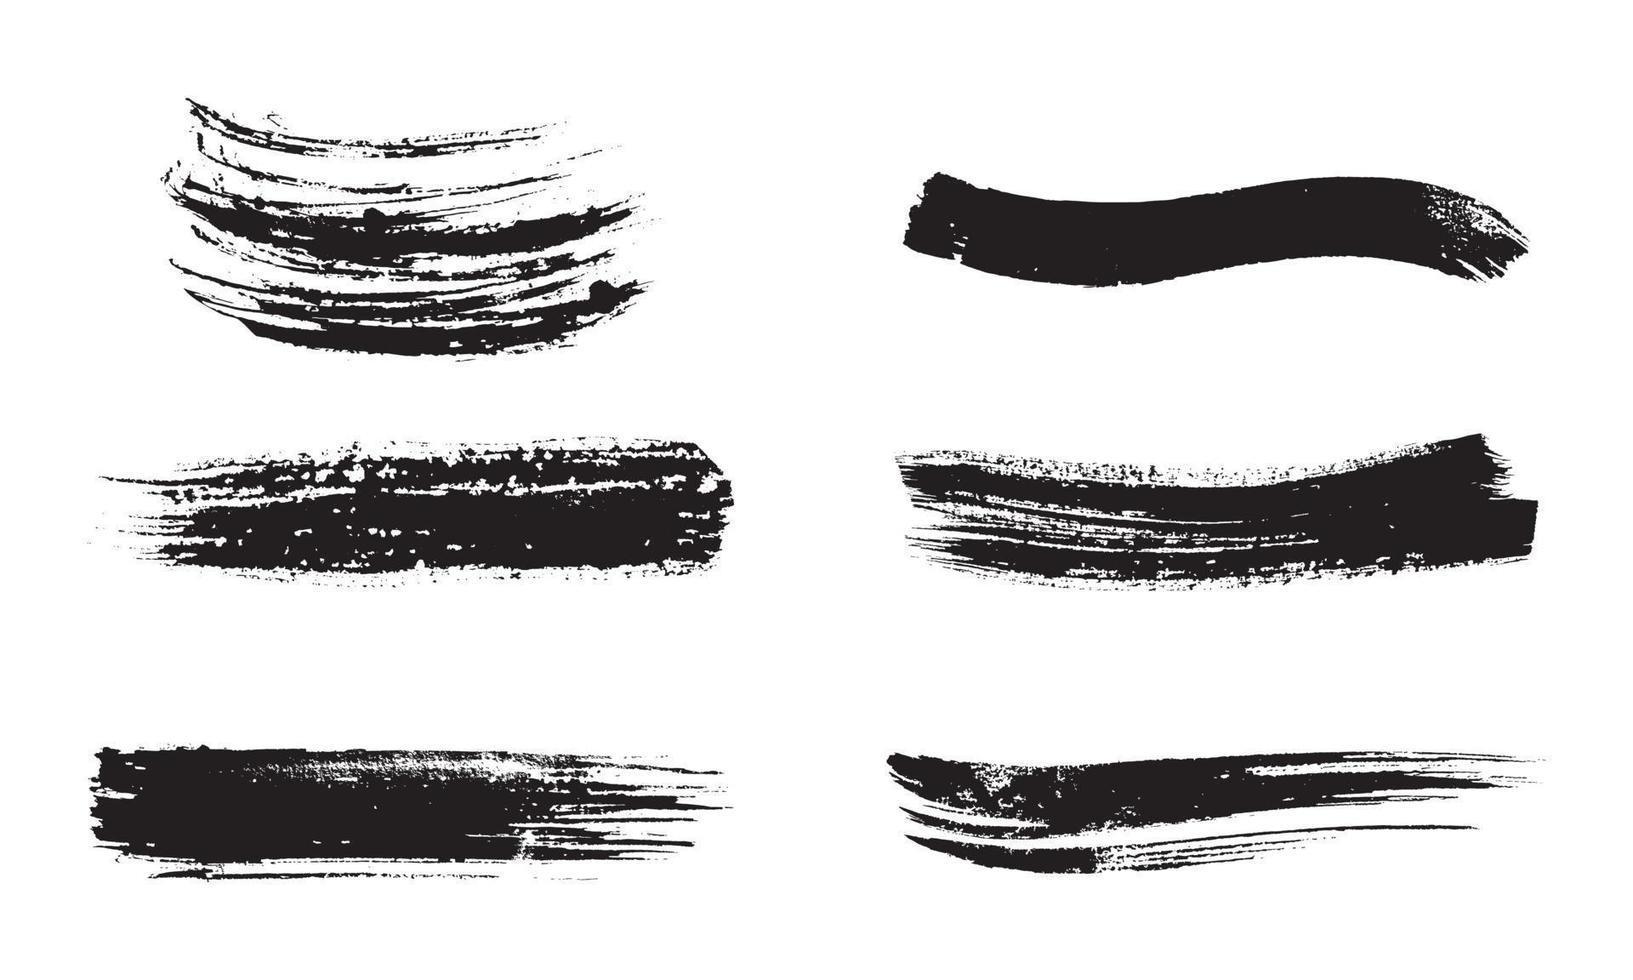 uppsättning av svart bläck streck på vitt papper. grafiska designelement för nedre tredjedelen, texteffekt, fotopverlay, etc. abstrakta penseldrag i kinesisk stil vektor